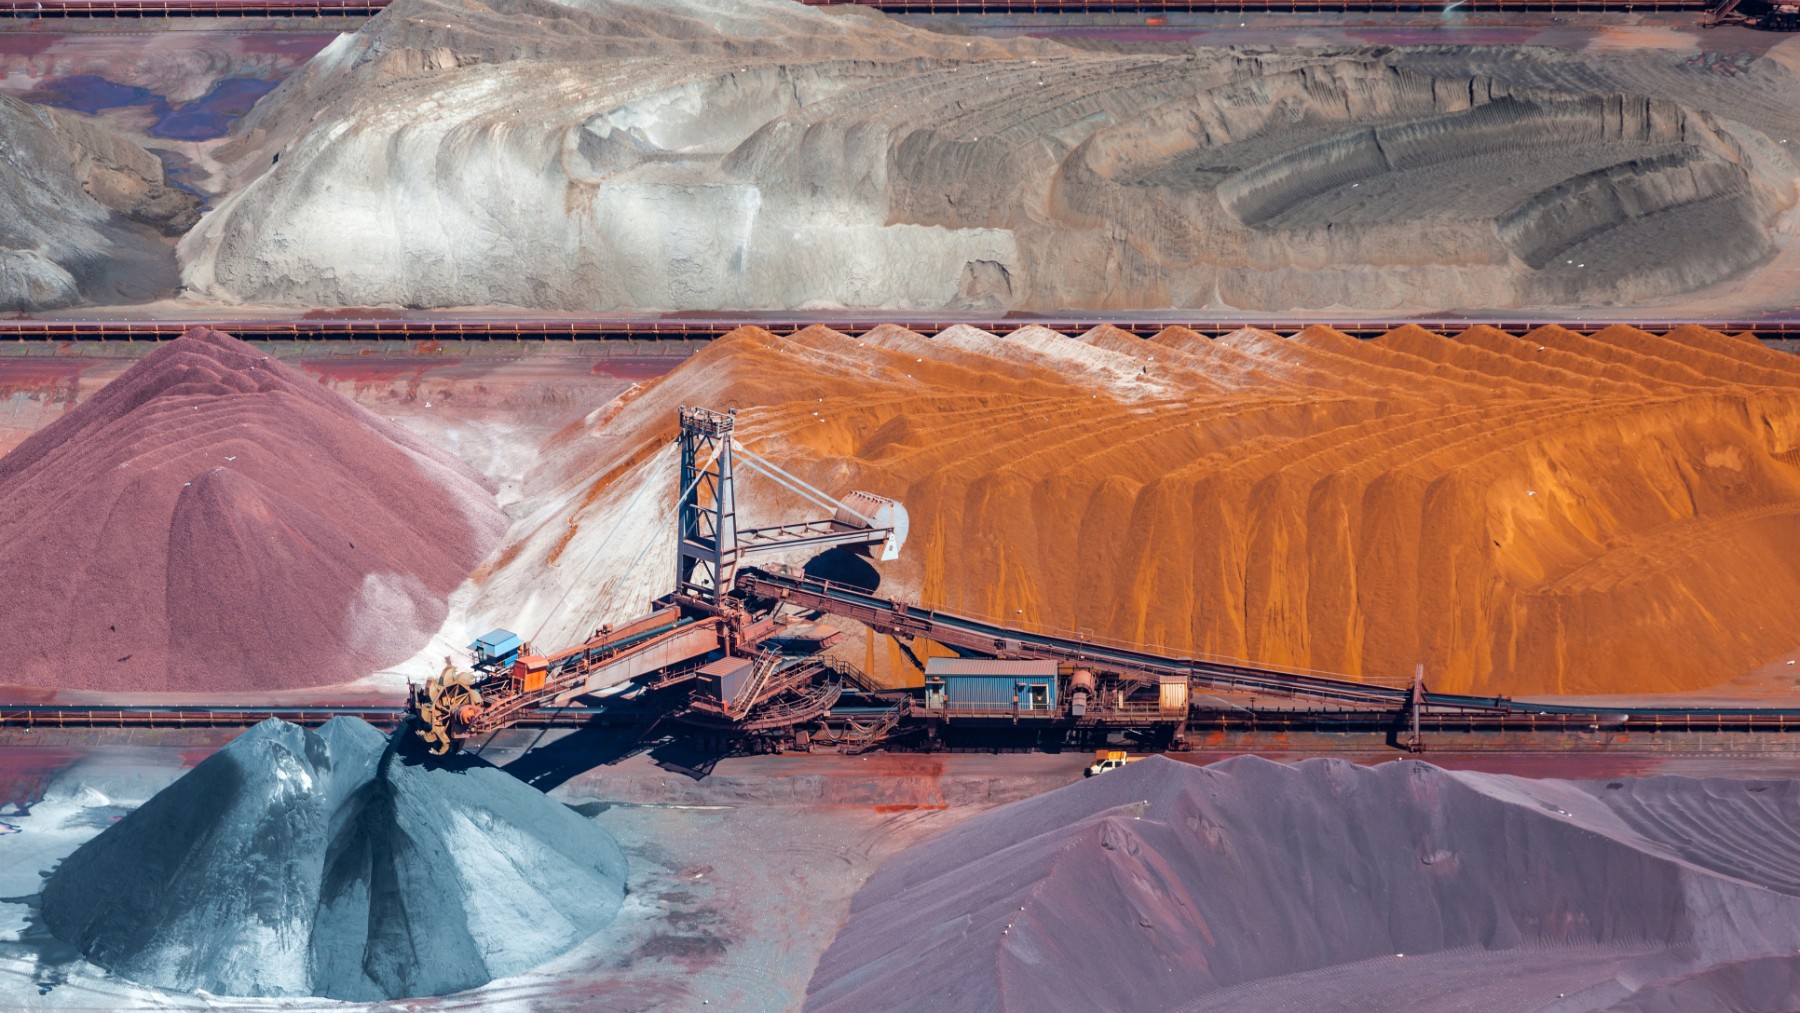 La demanda mundial de minerales críticos podría multiplicarse de cuatro a seis veces respecto a la actual, por lo que se requiere una planificación adecuada para garantizar su suministro